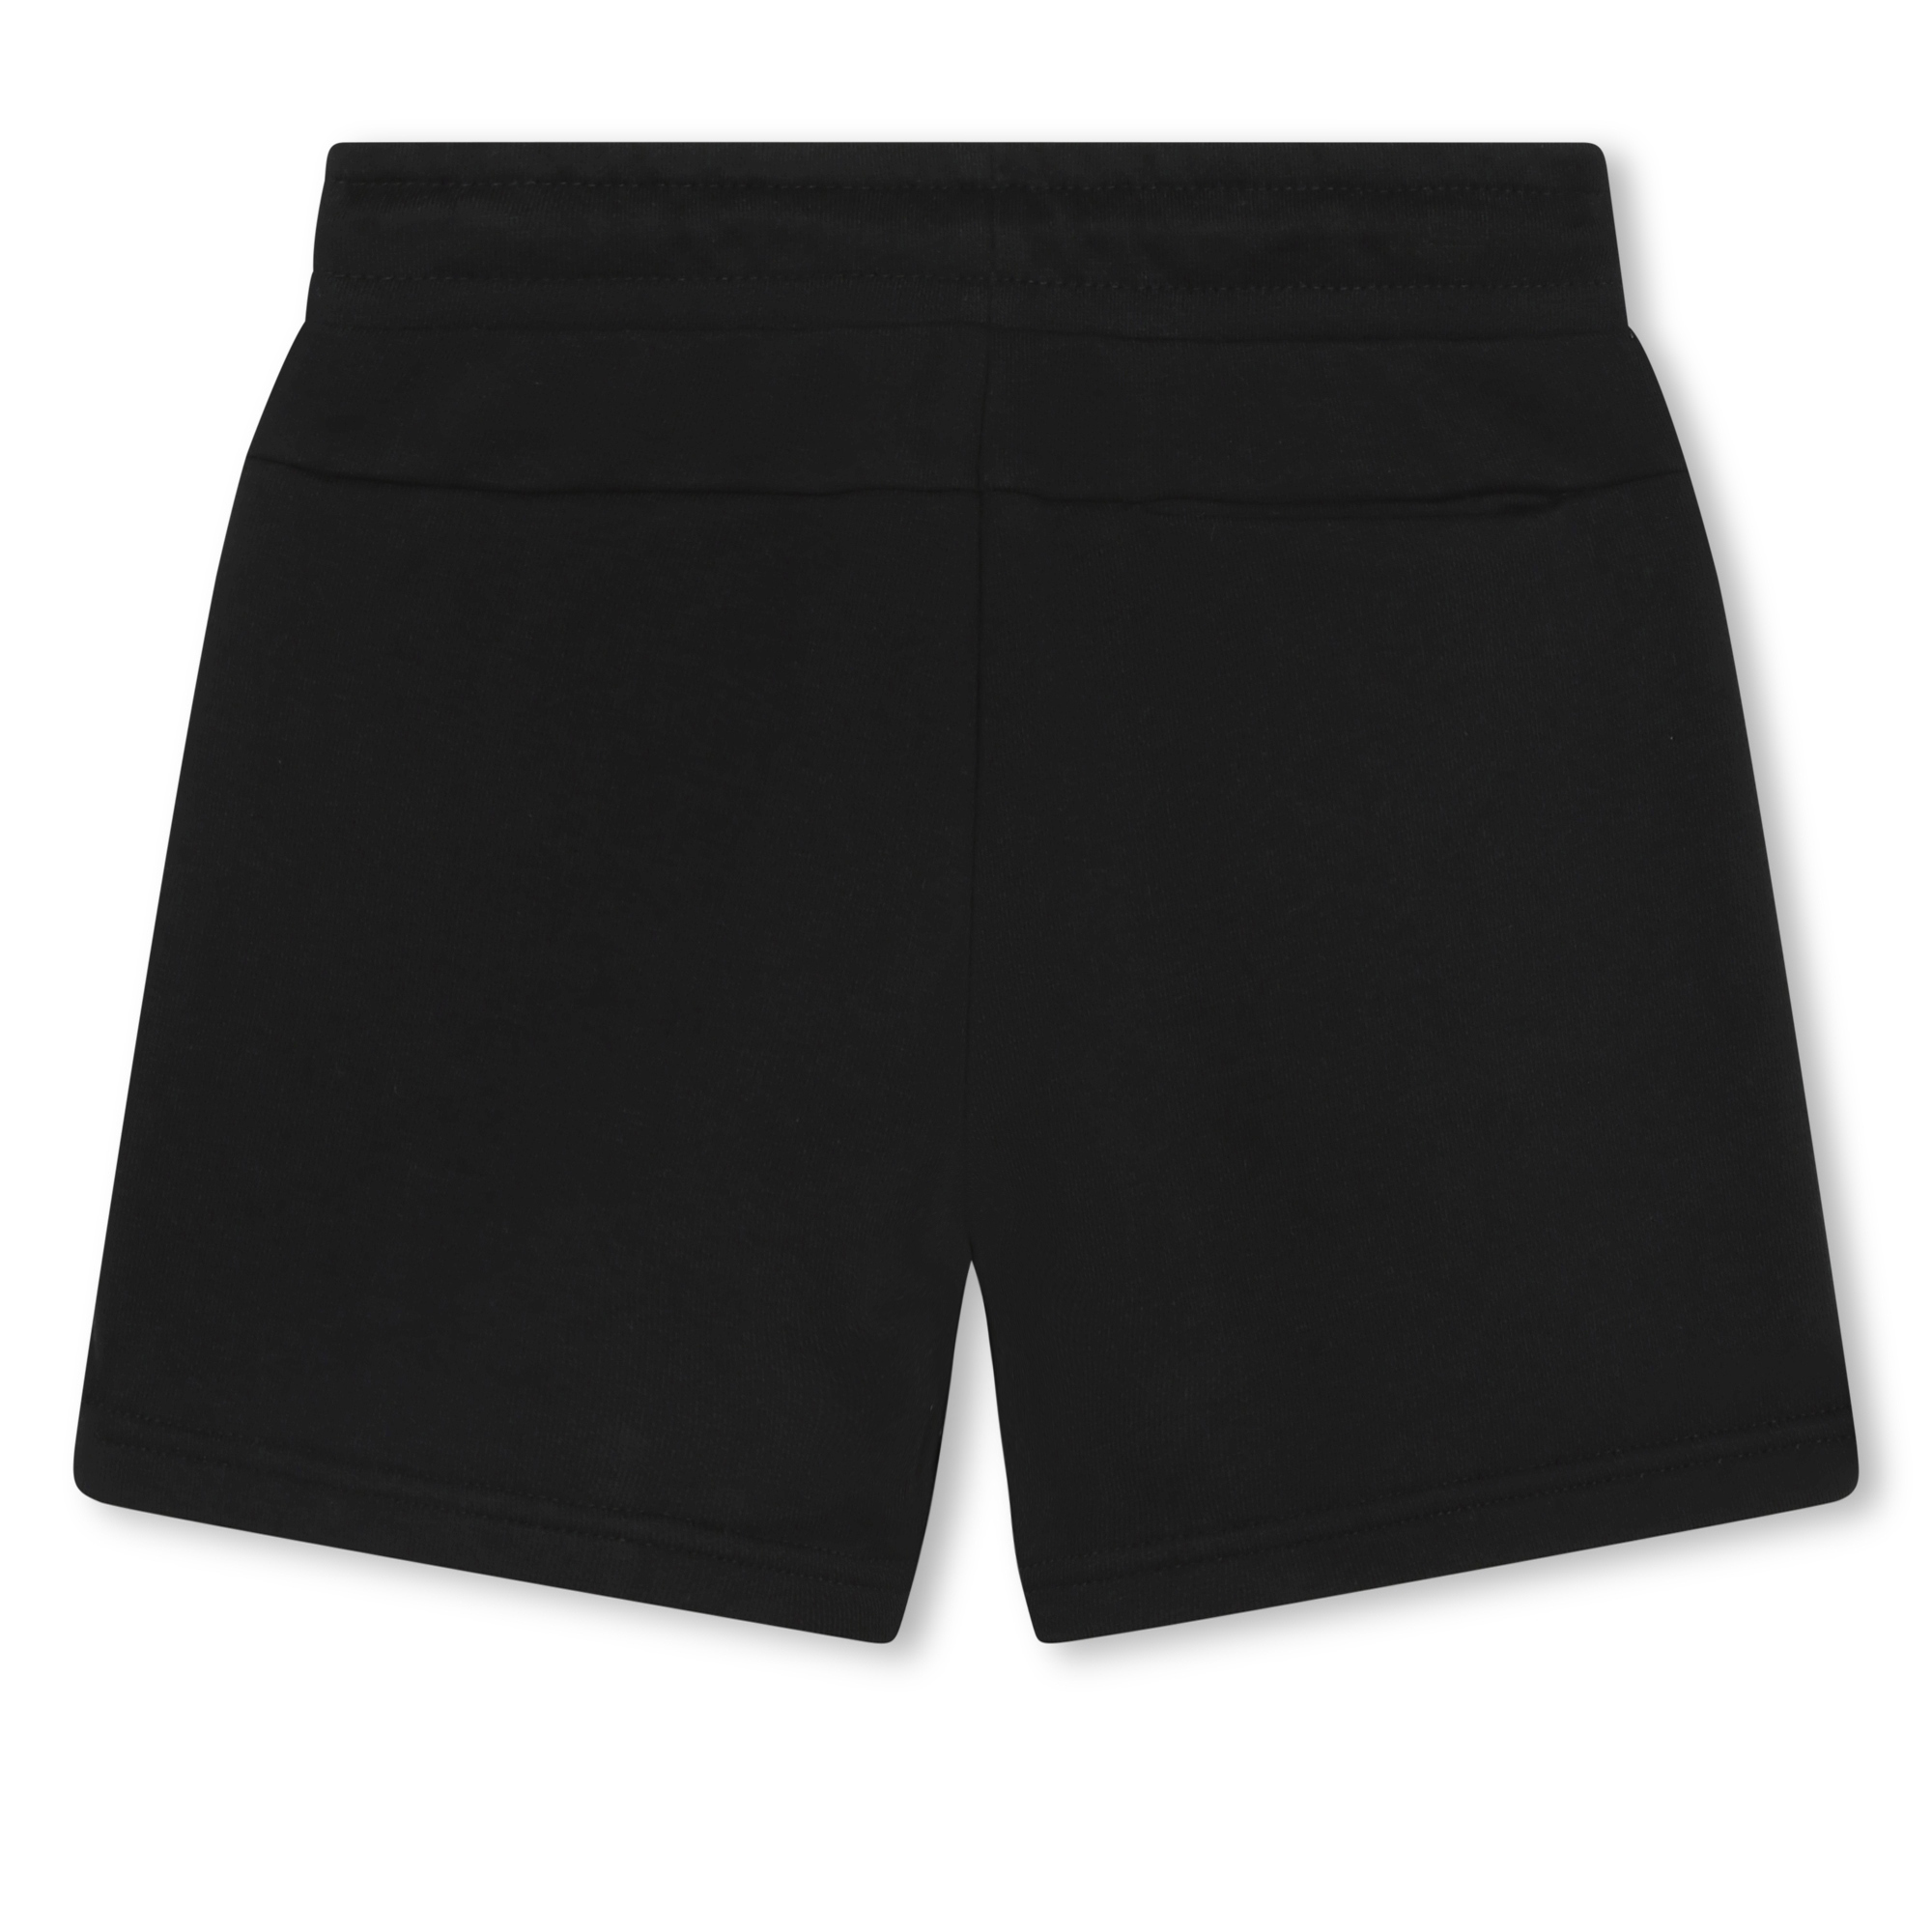 Bermuda-Shorts aus Molton KARL LAGERFELD KIDS Für JUNGE